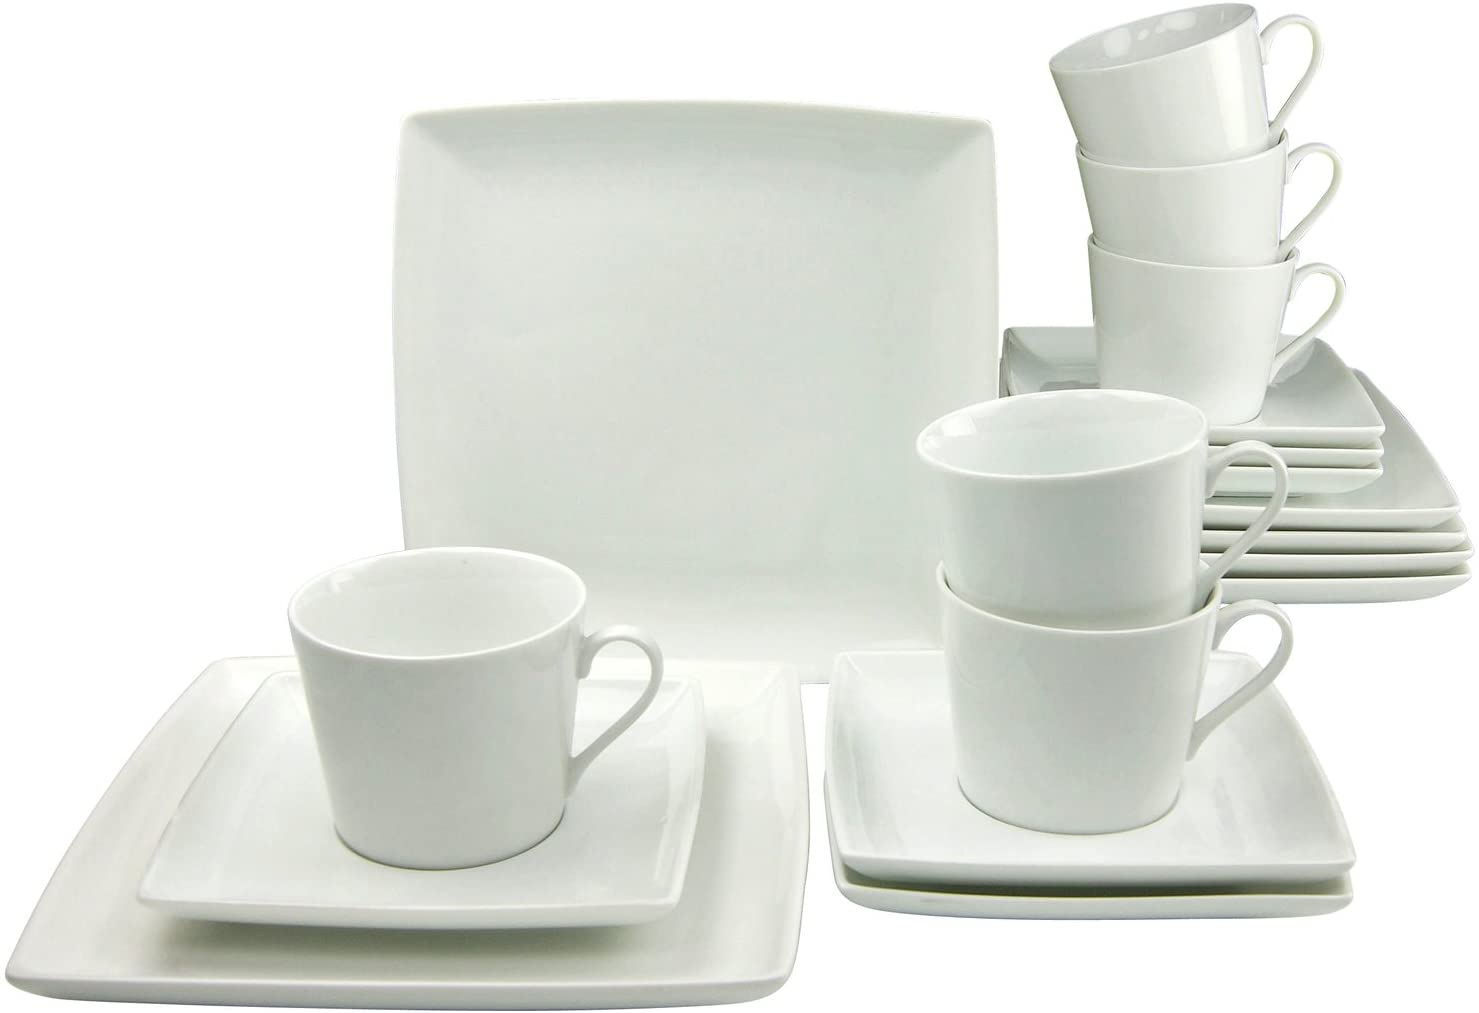 Creatable 19997 Series Ecco 3-Piece Coffee Set 18 Pieces, Porcelain, White, 38 x 21 x 25 cm, 18 units